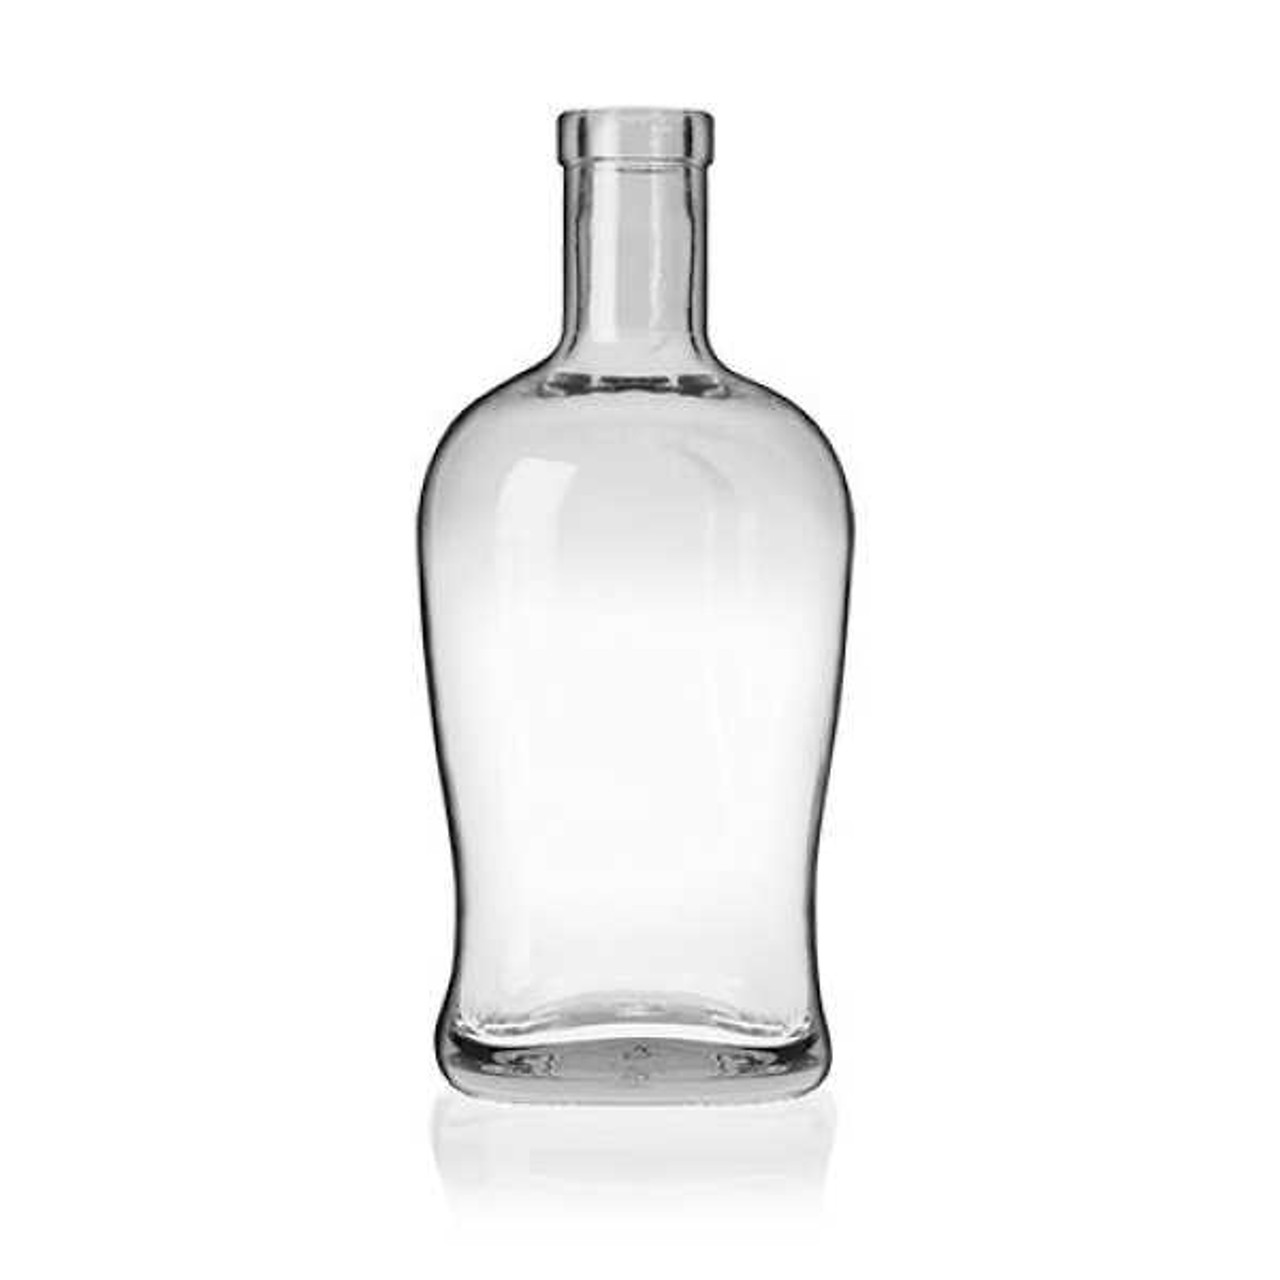 12/Case - Bulk 750 ml Glass Square New Yorker Liquor Bottle 18.5 mm Bar Top Neck Fini | TricorBraun